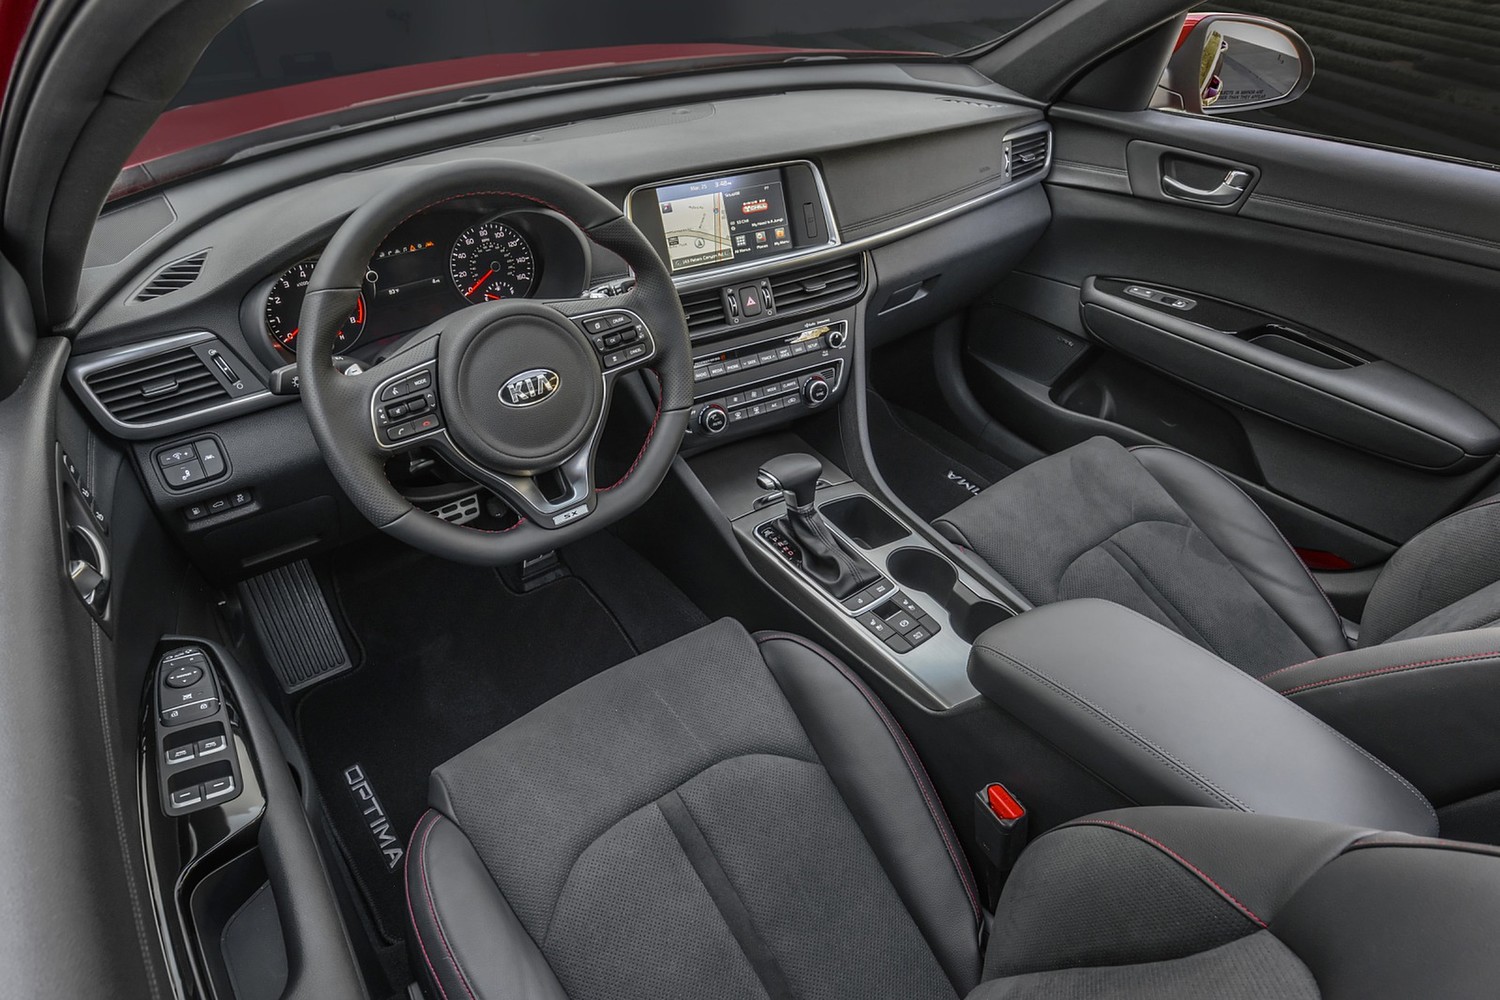 2016 Kia Optima SX Turbo Sedan Interior Shown